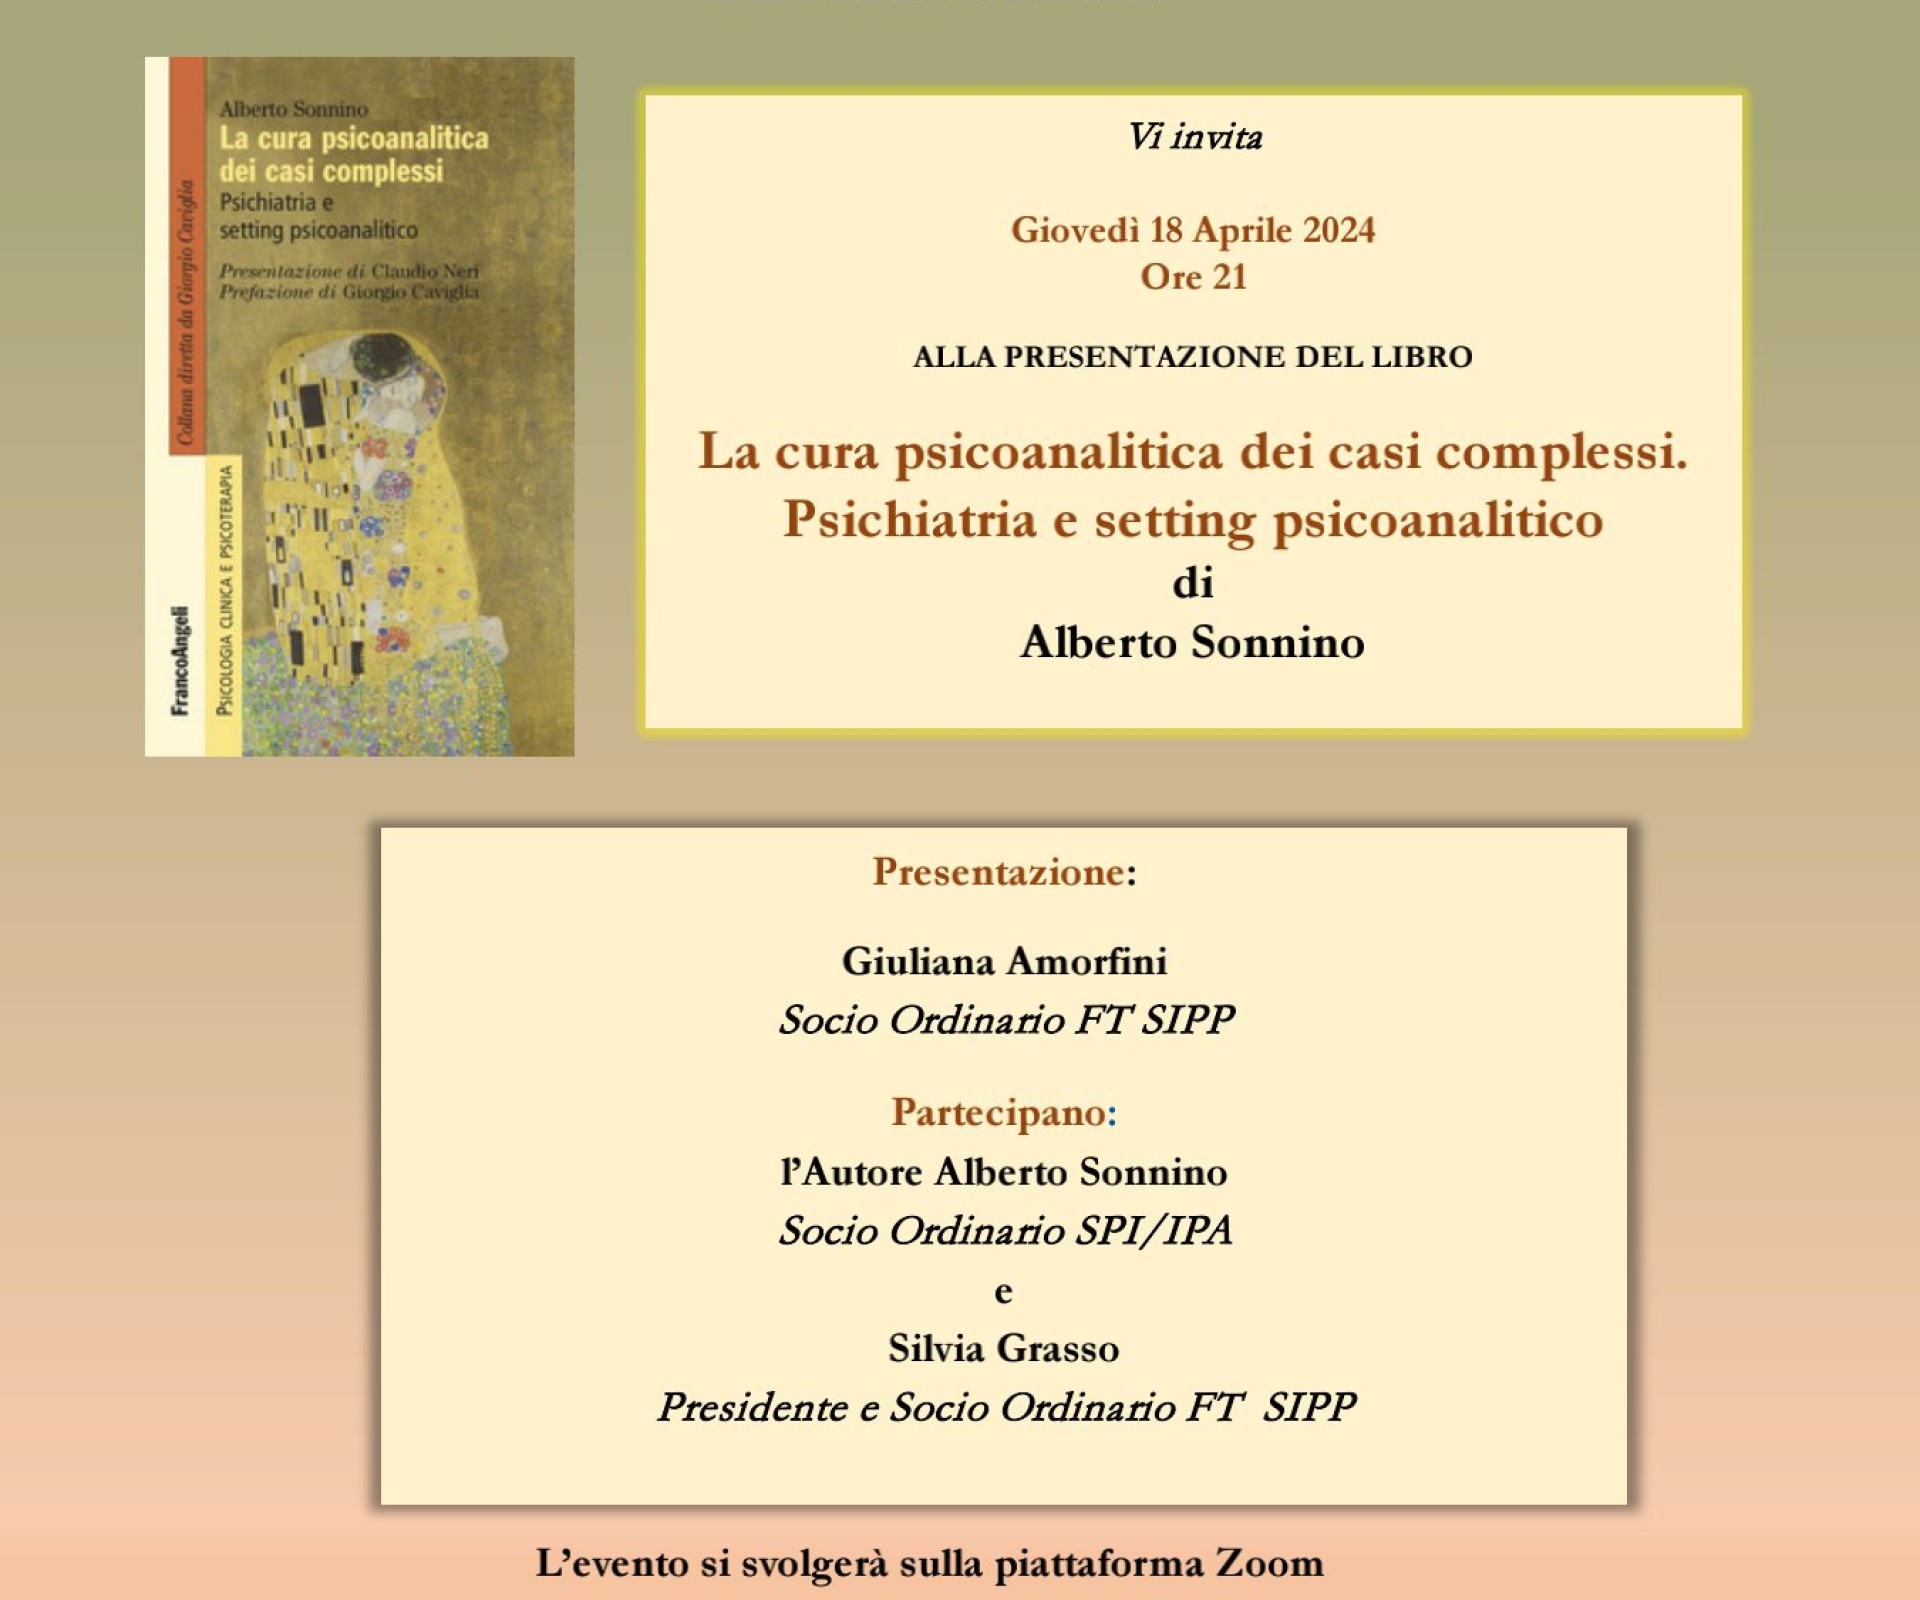 Presentazione del libro "LA CURA PSICOANALITICA DEI CASI COMPLESSI" di A. Sonnino